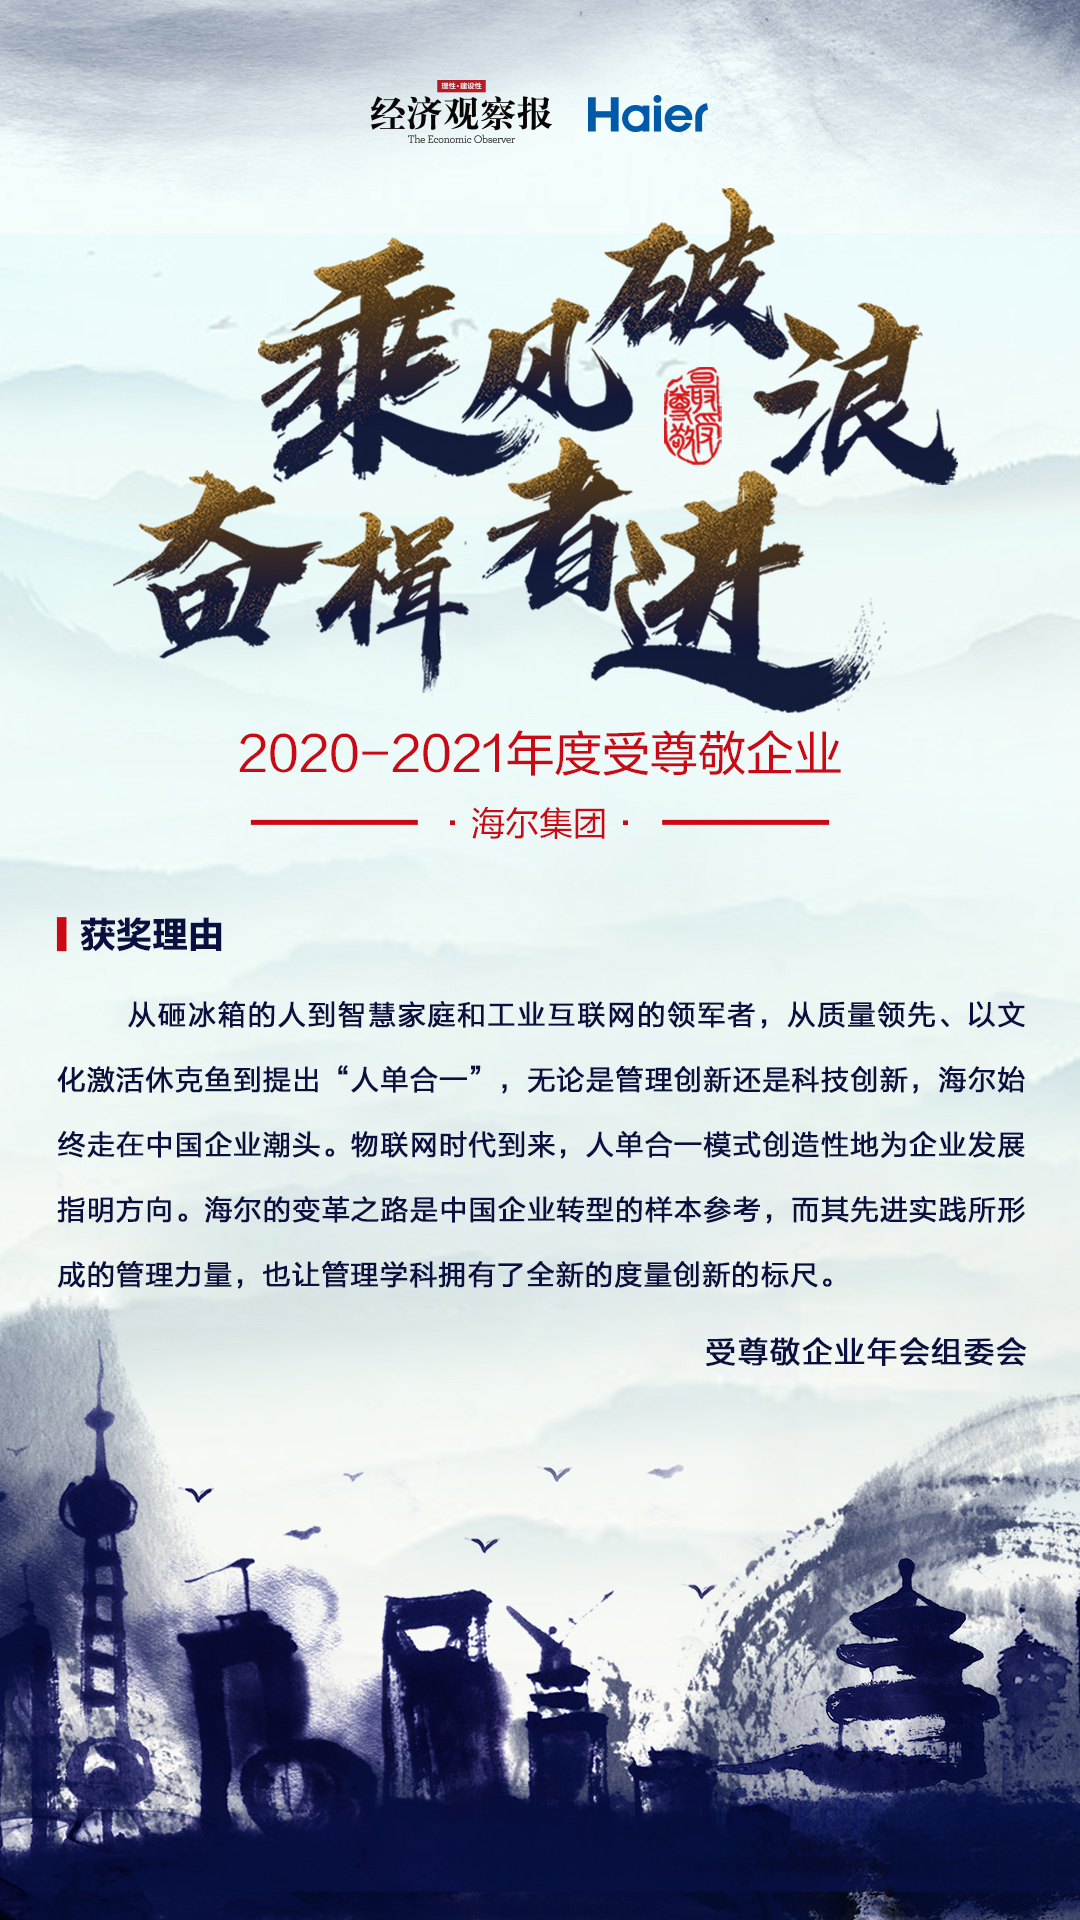 2020-2021年度中国最受尊敬企业 获奖理由.jpg